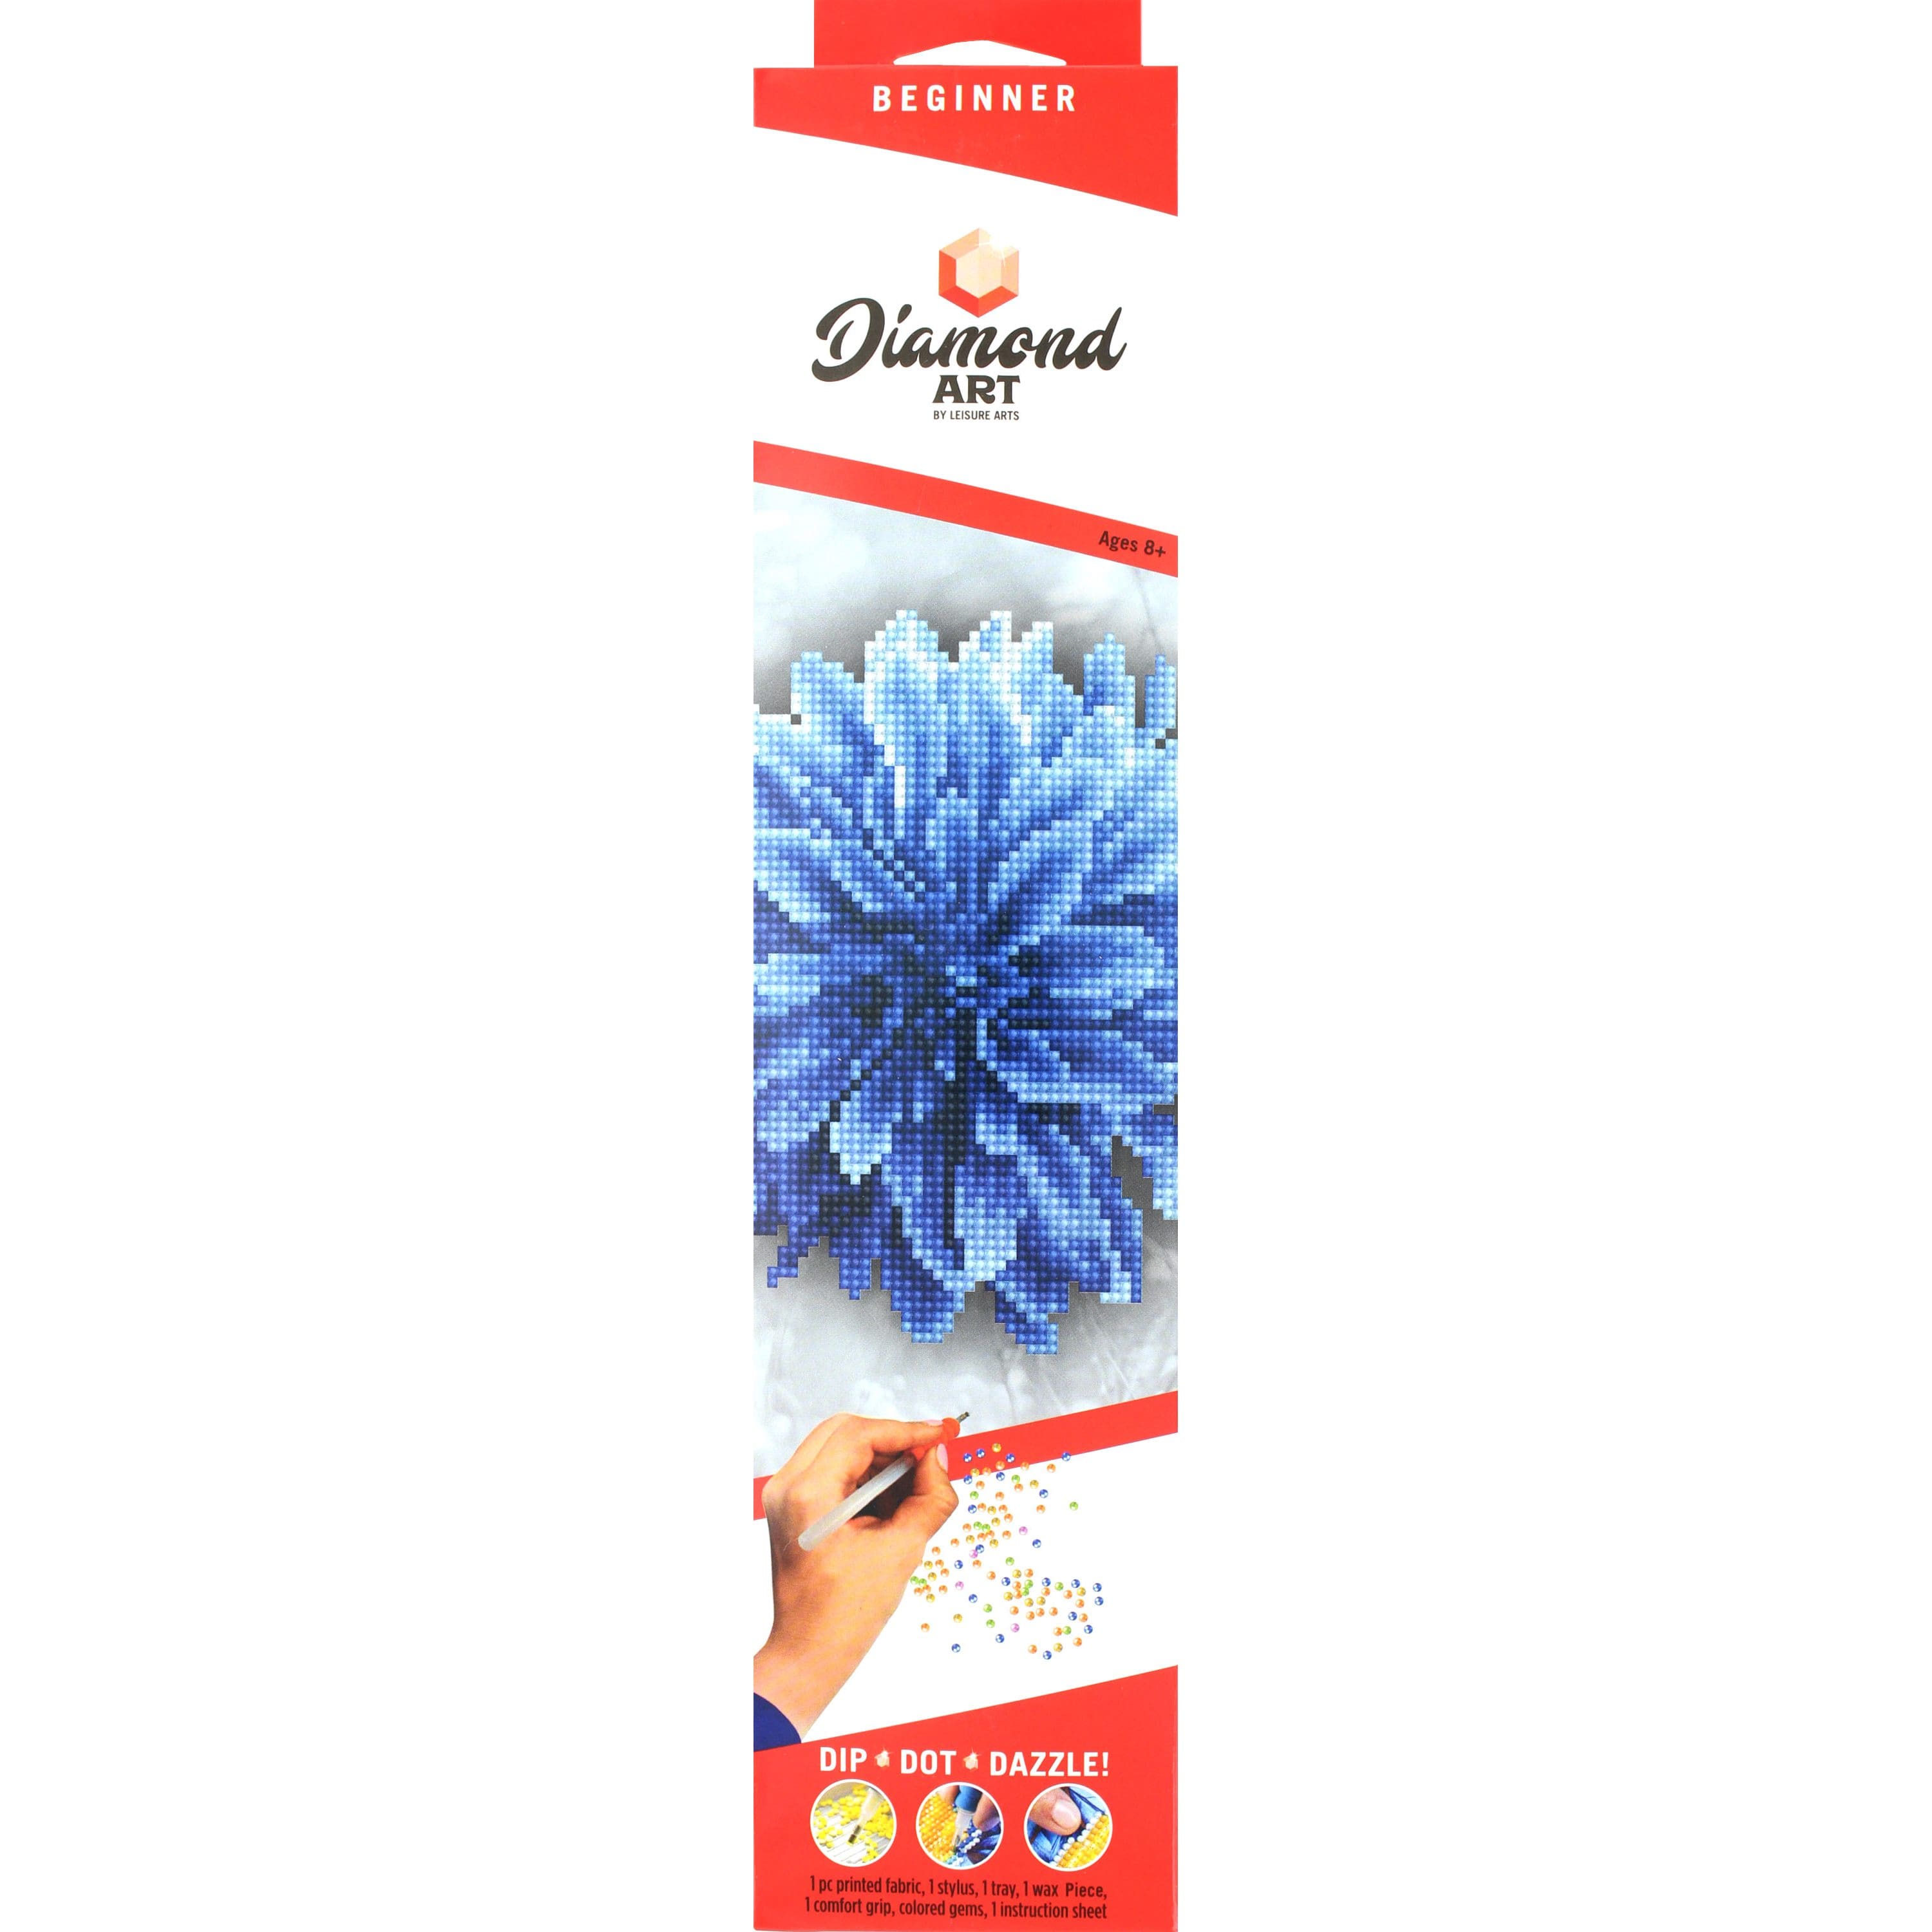 Diamond Art Beginner Blue Dahlia Kit